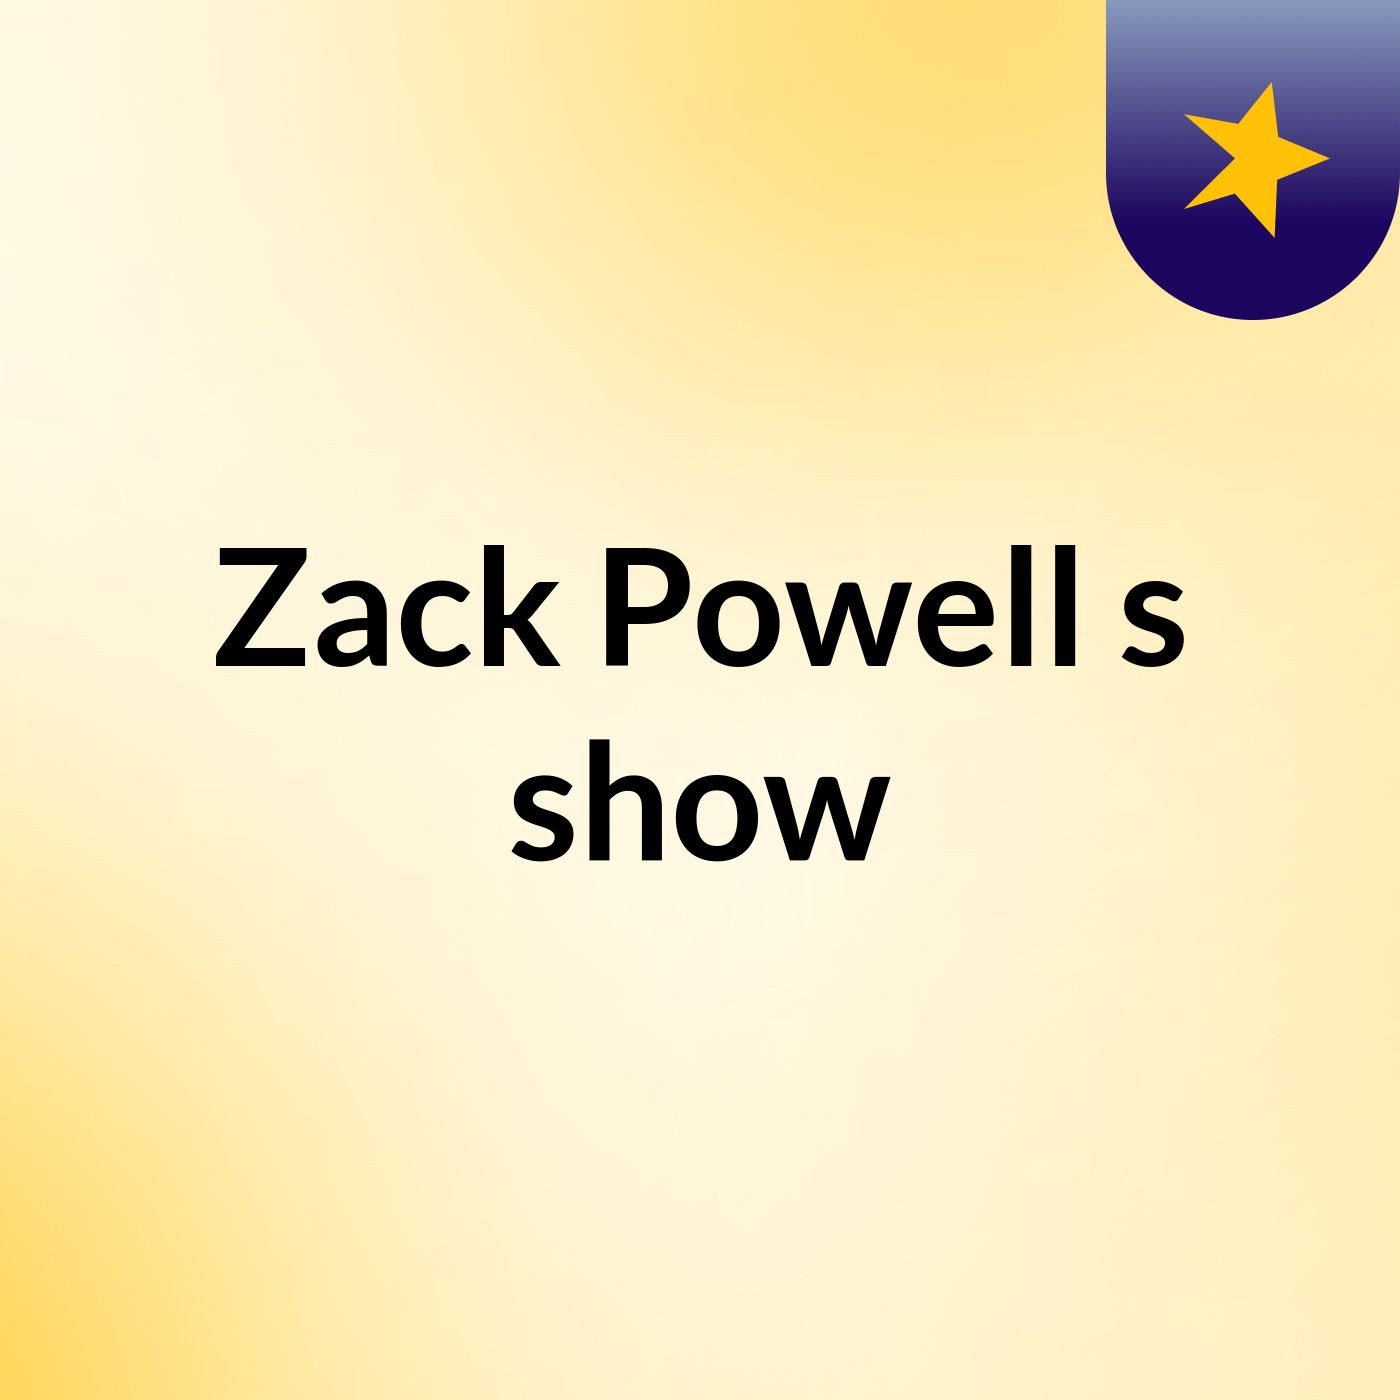 Zack Powell's show